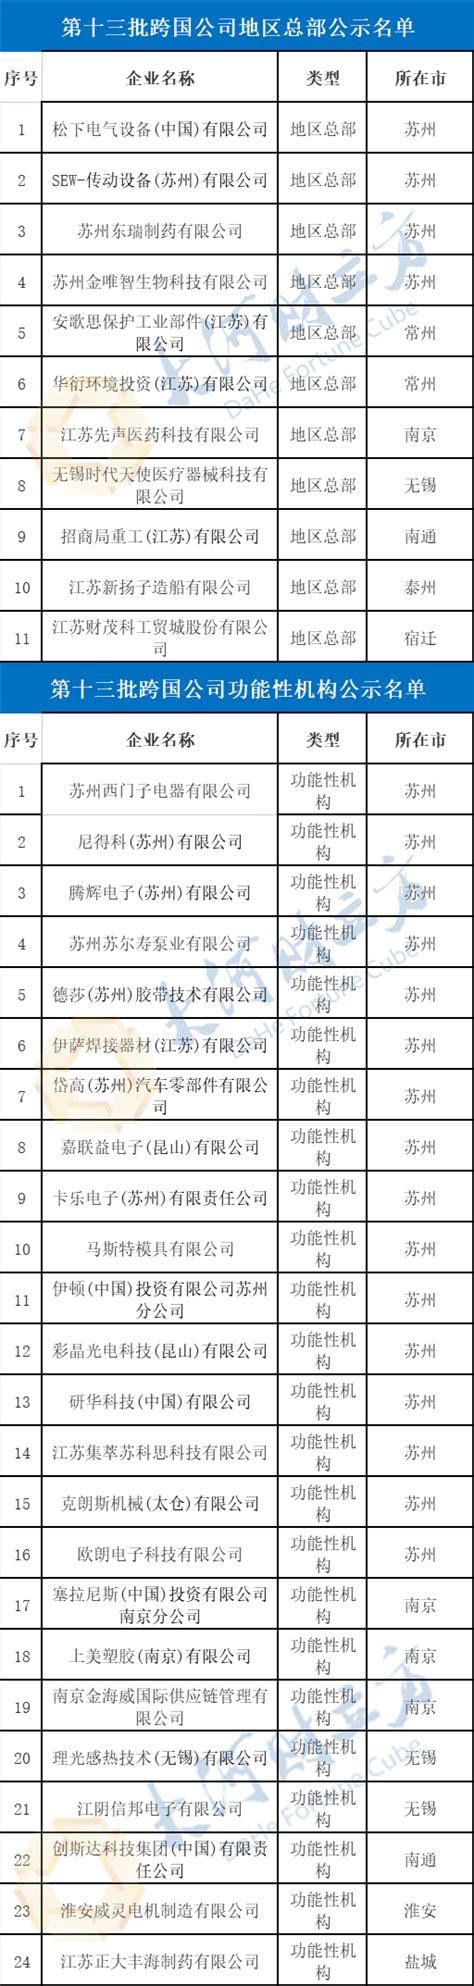 江苏省商务厅拟认定35家跨国公司地区总部和功能性机构企业 | 名单